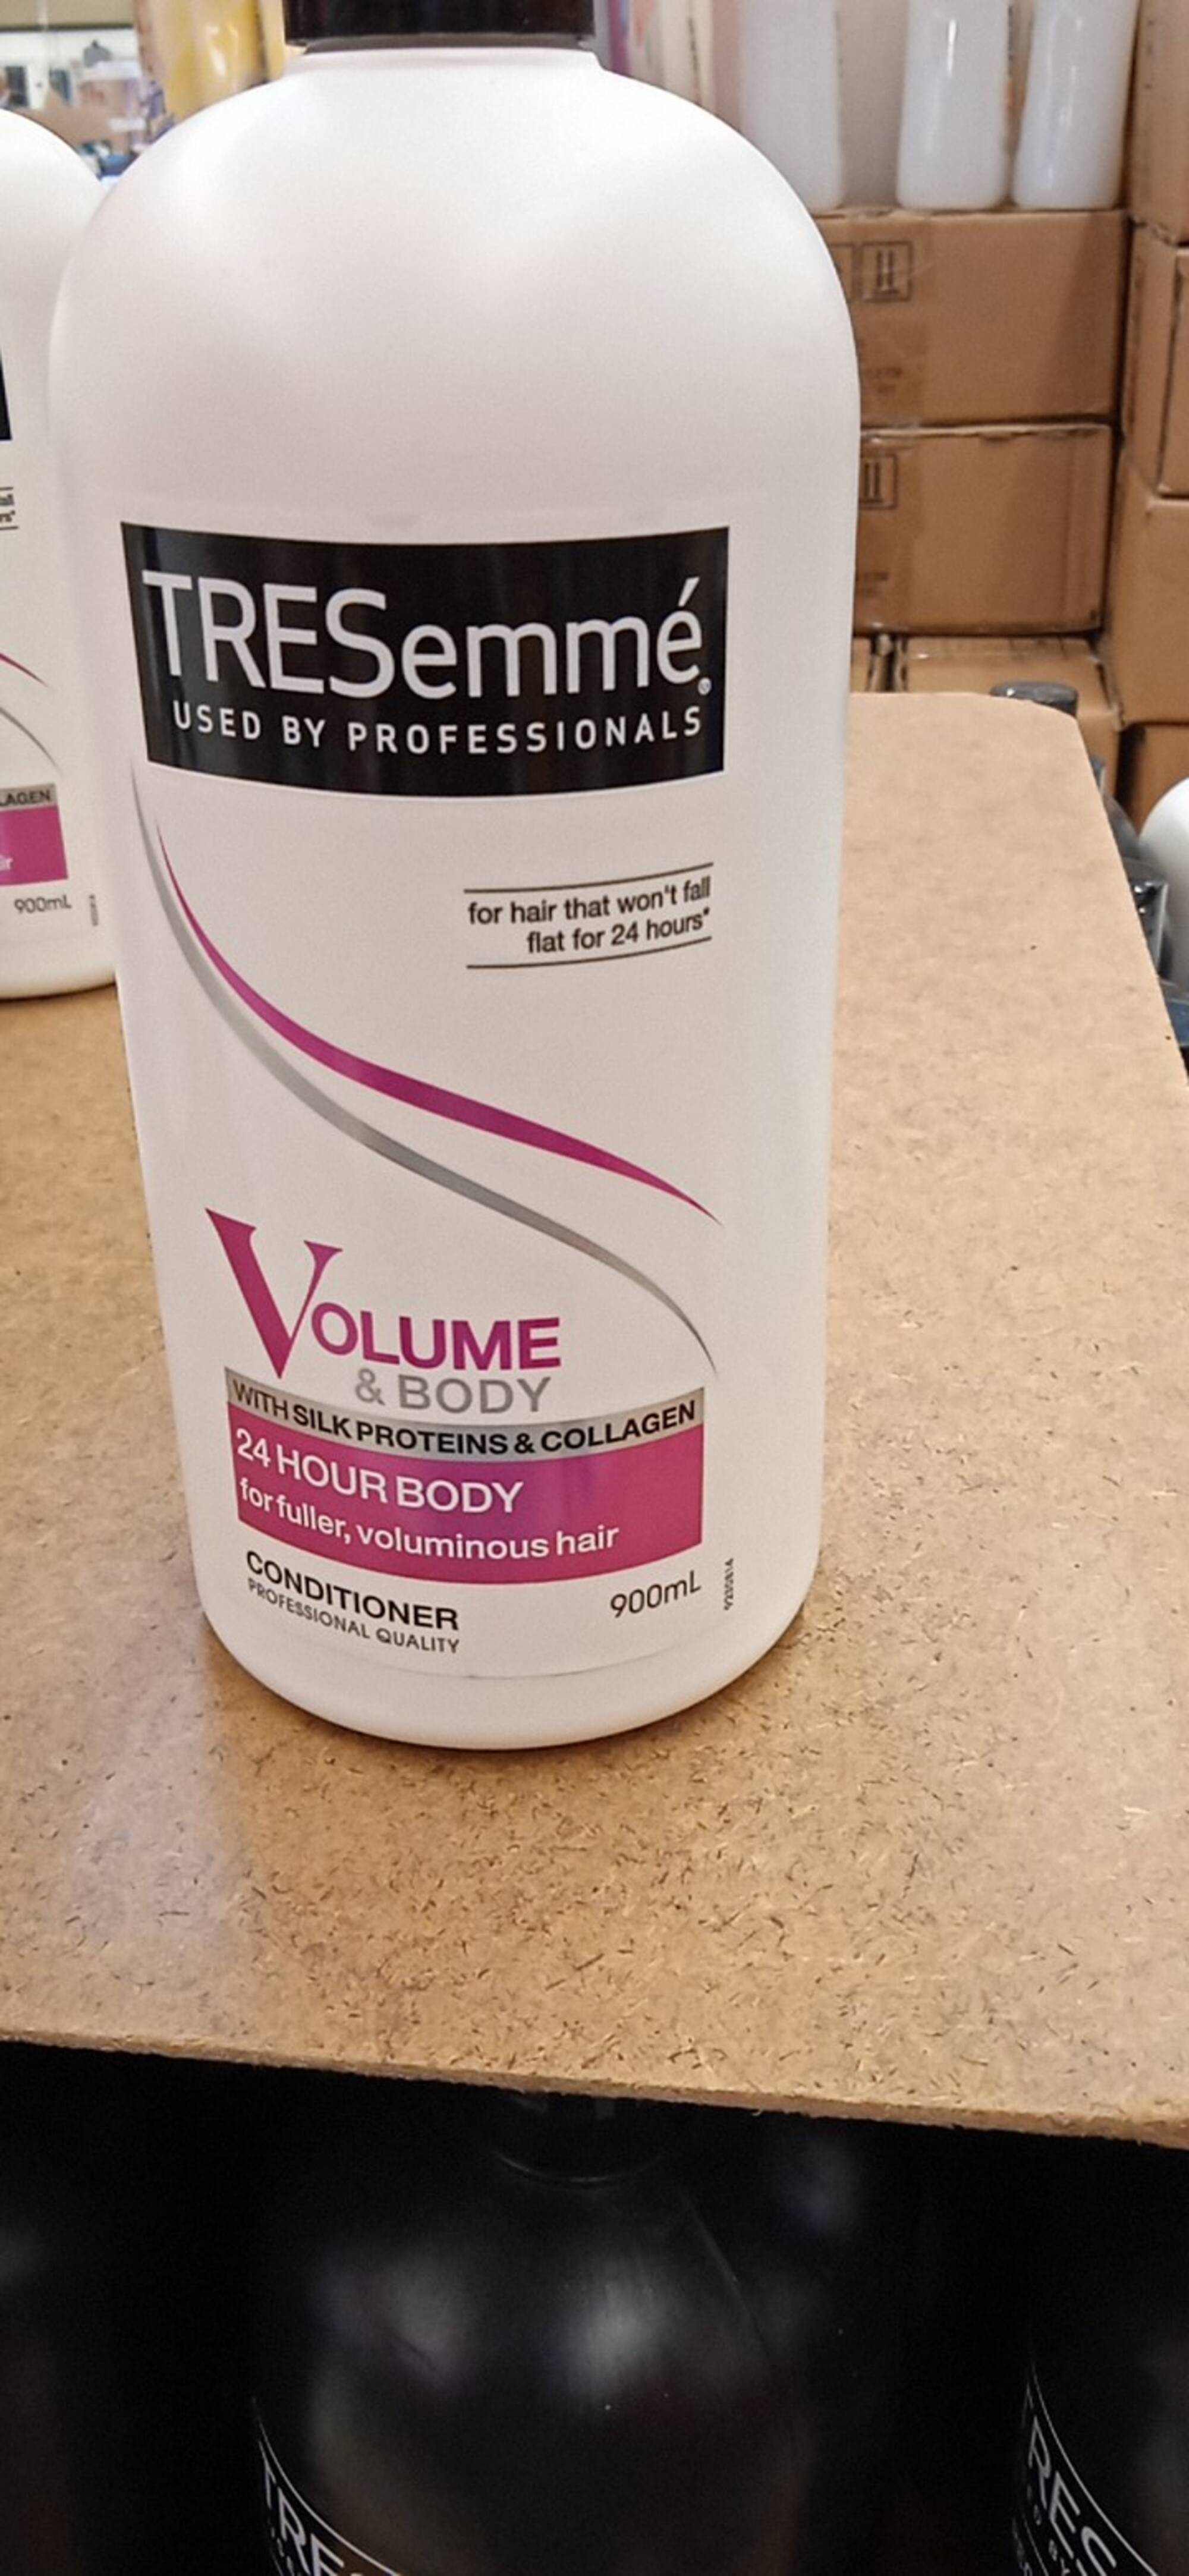 TRESEMMÉ - Volume & body with silk proteins & collagen - Conditioner